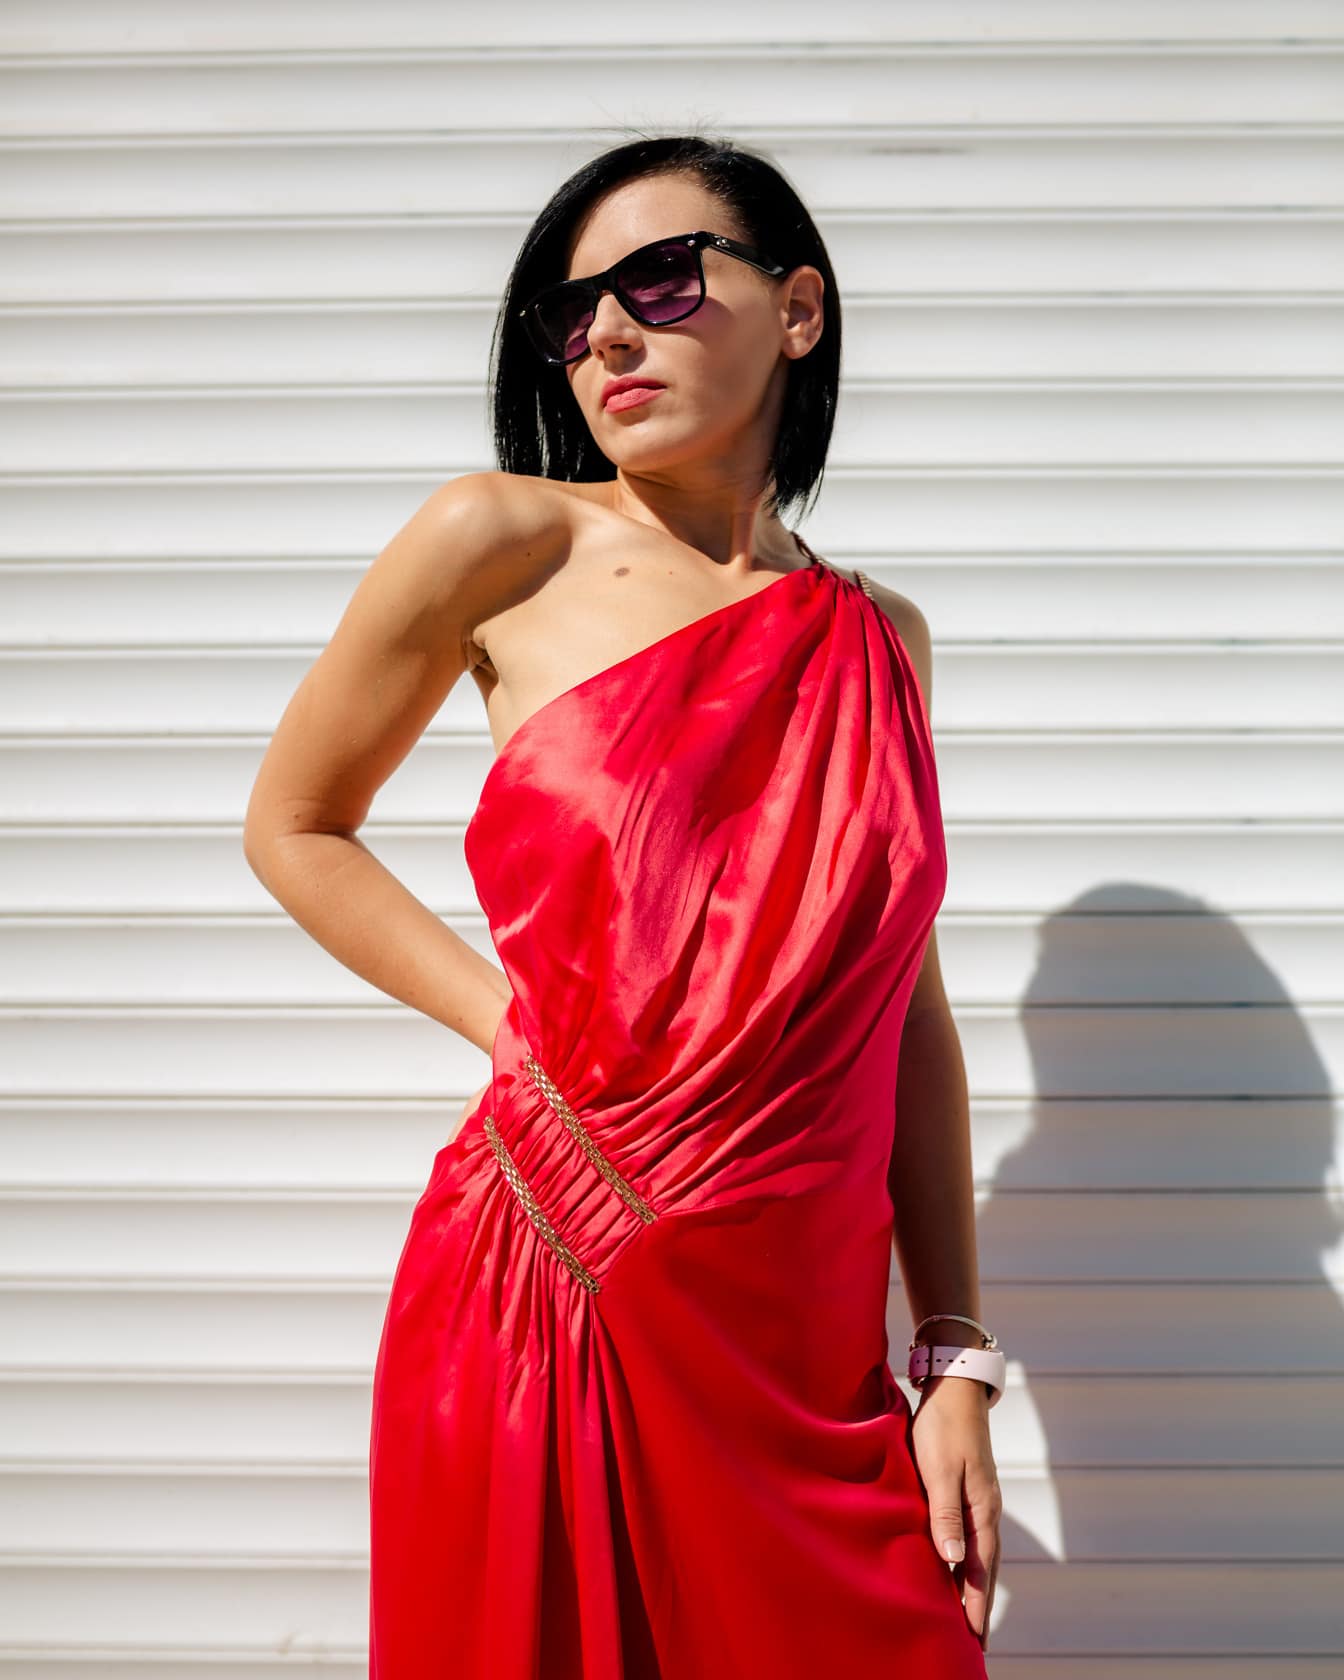 Muotokuva hyvännäköisestä hoikasta naisesta, joka poseeraa punaisessa silkkisessä mekossa